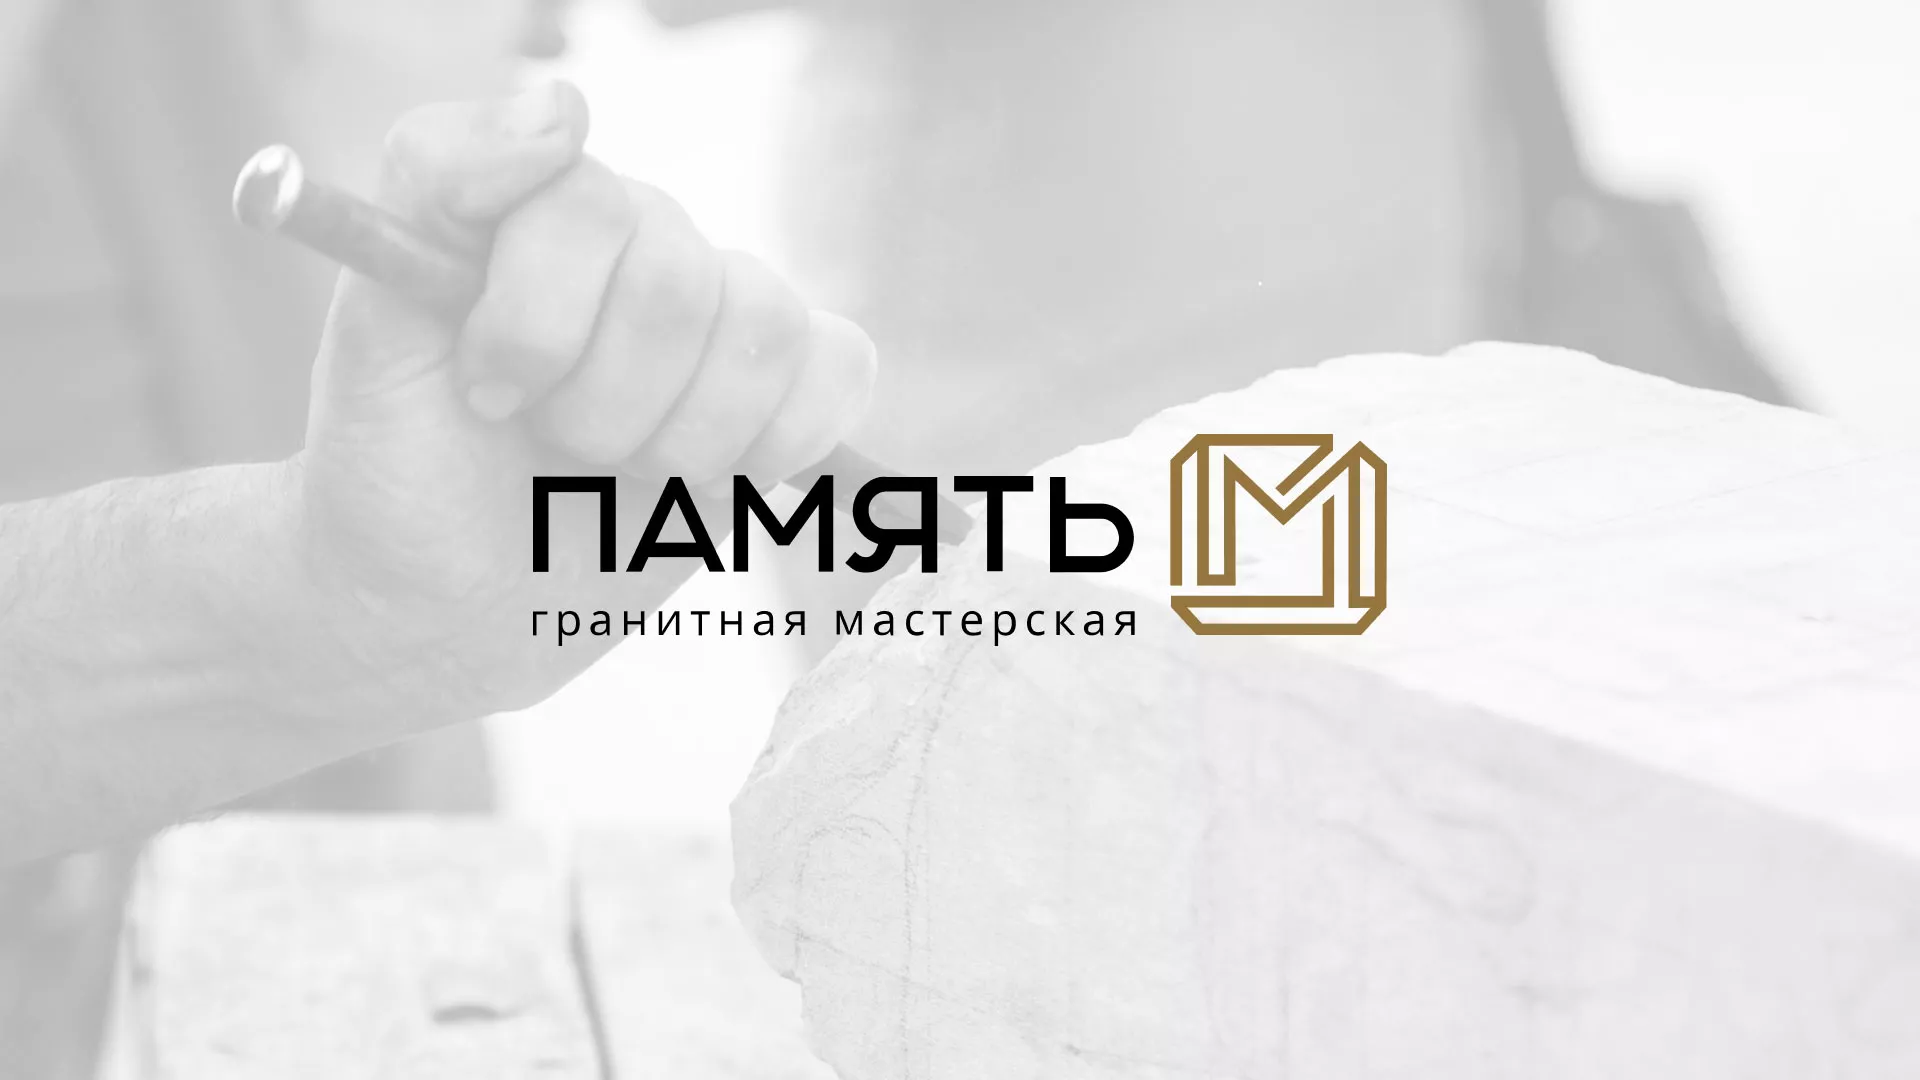 Разработка логотипа и сайта компании «Память-М» в Ликино-Дулево